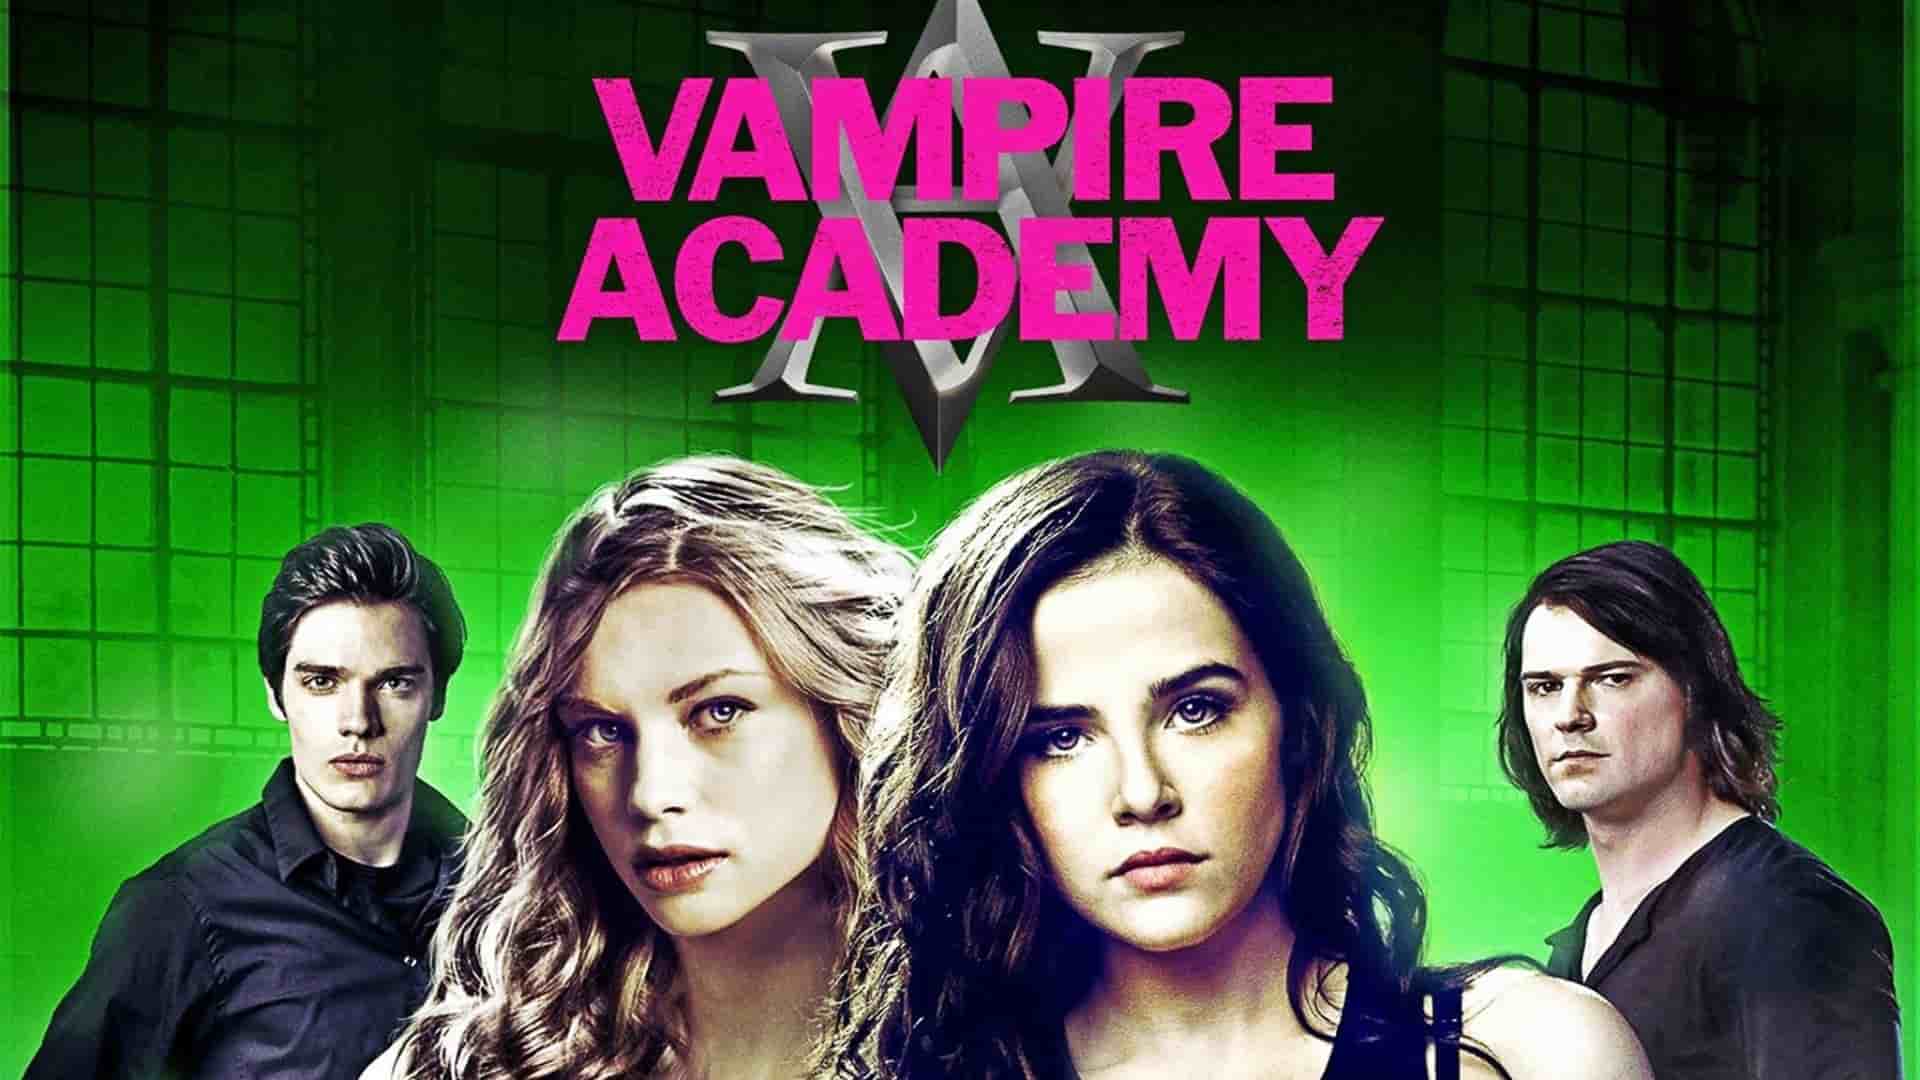 دانلود فیلم Vampire Academy 2014